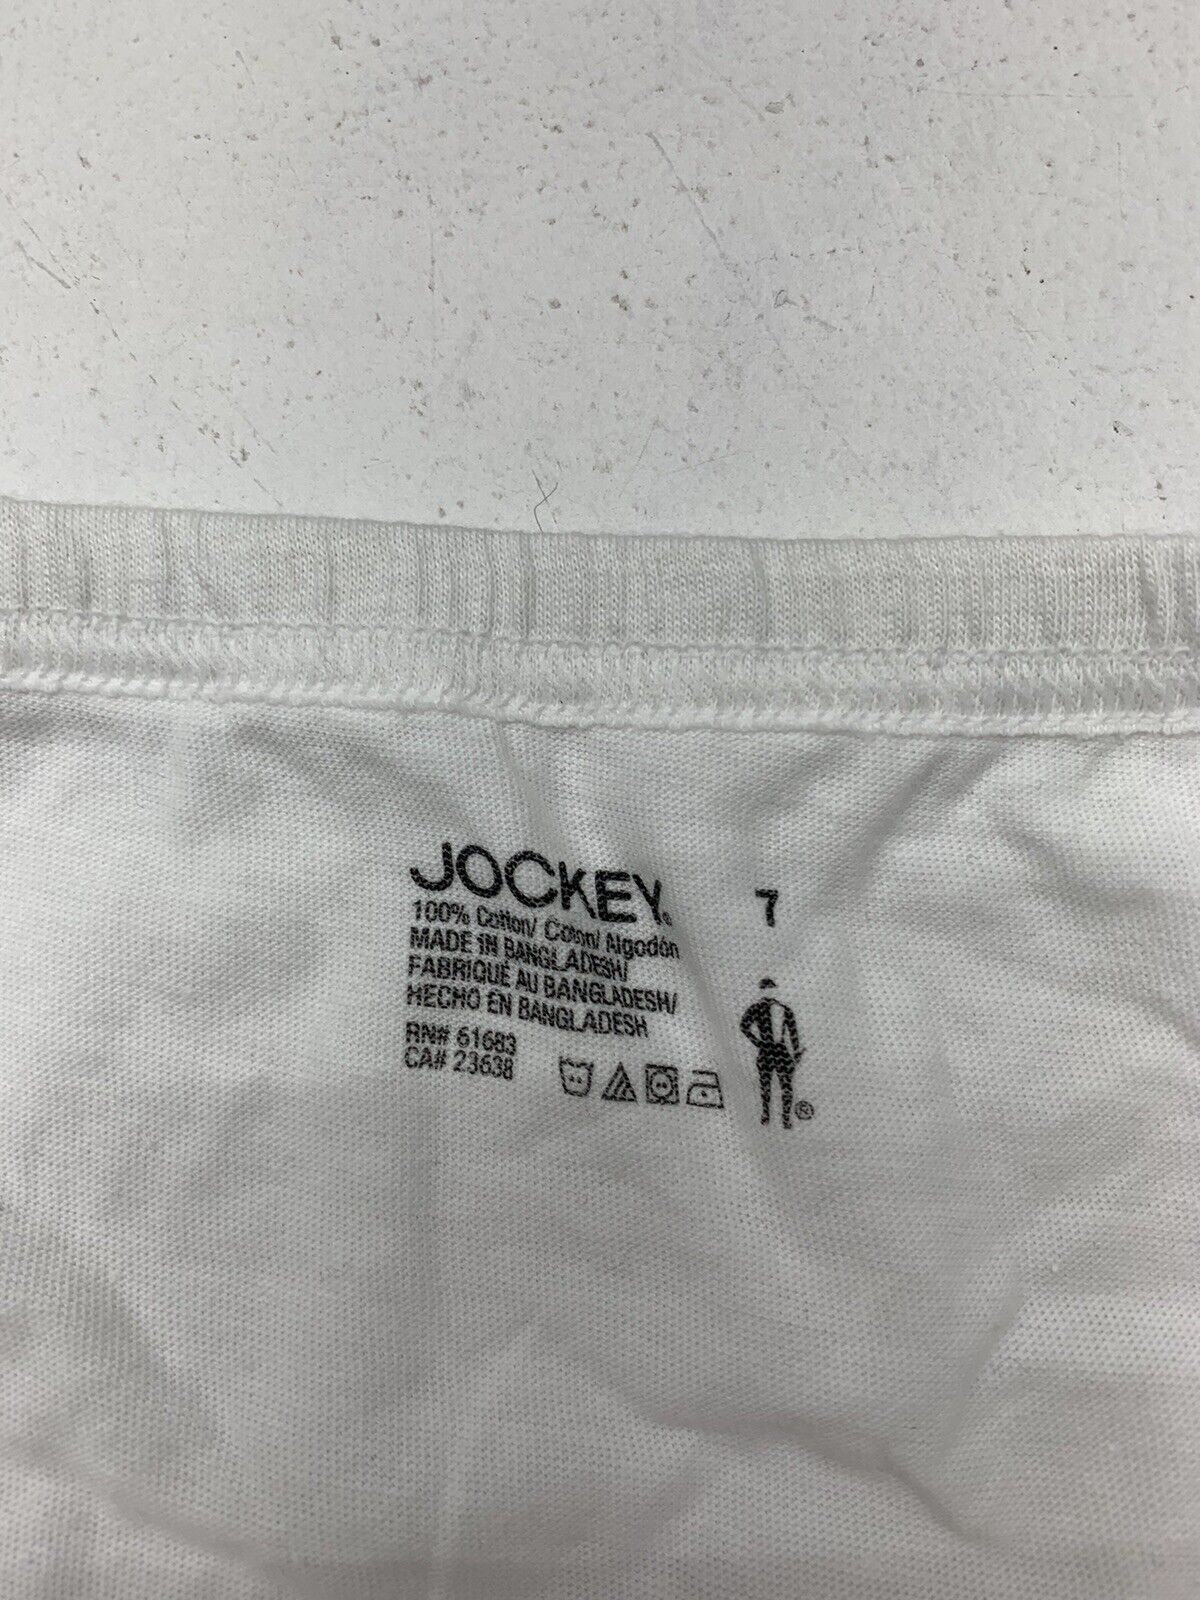  Jockey Underwear For Women - Women's Fashion: Clothing